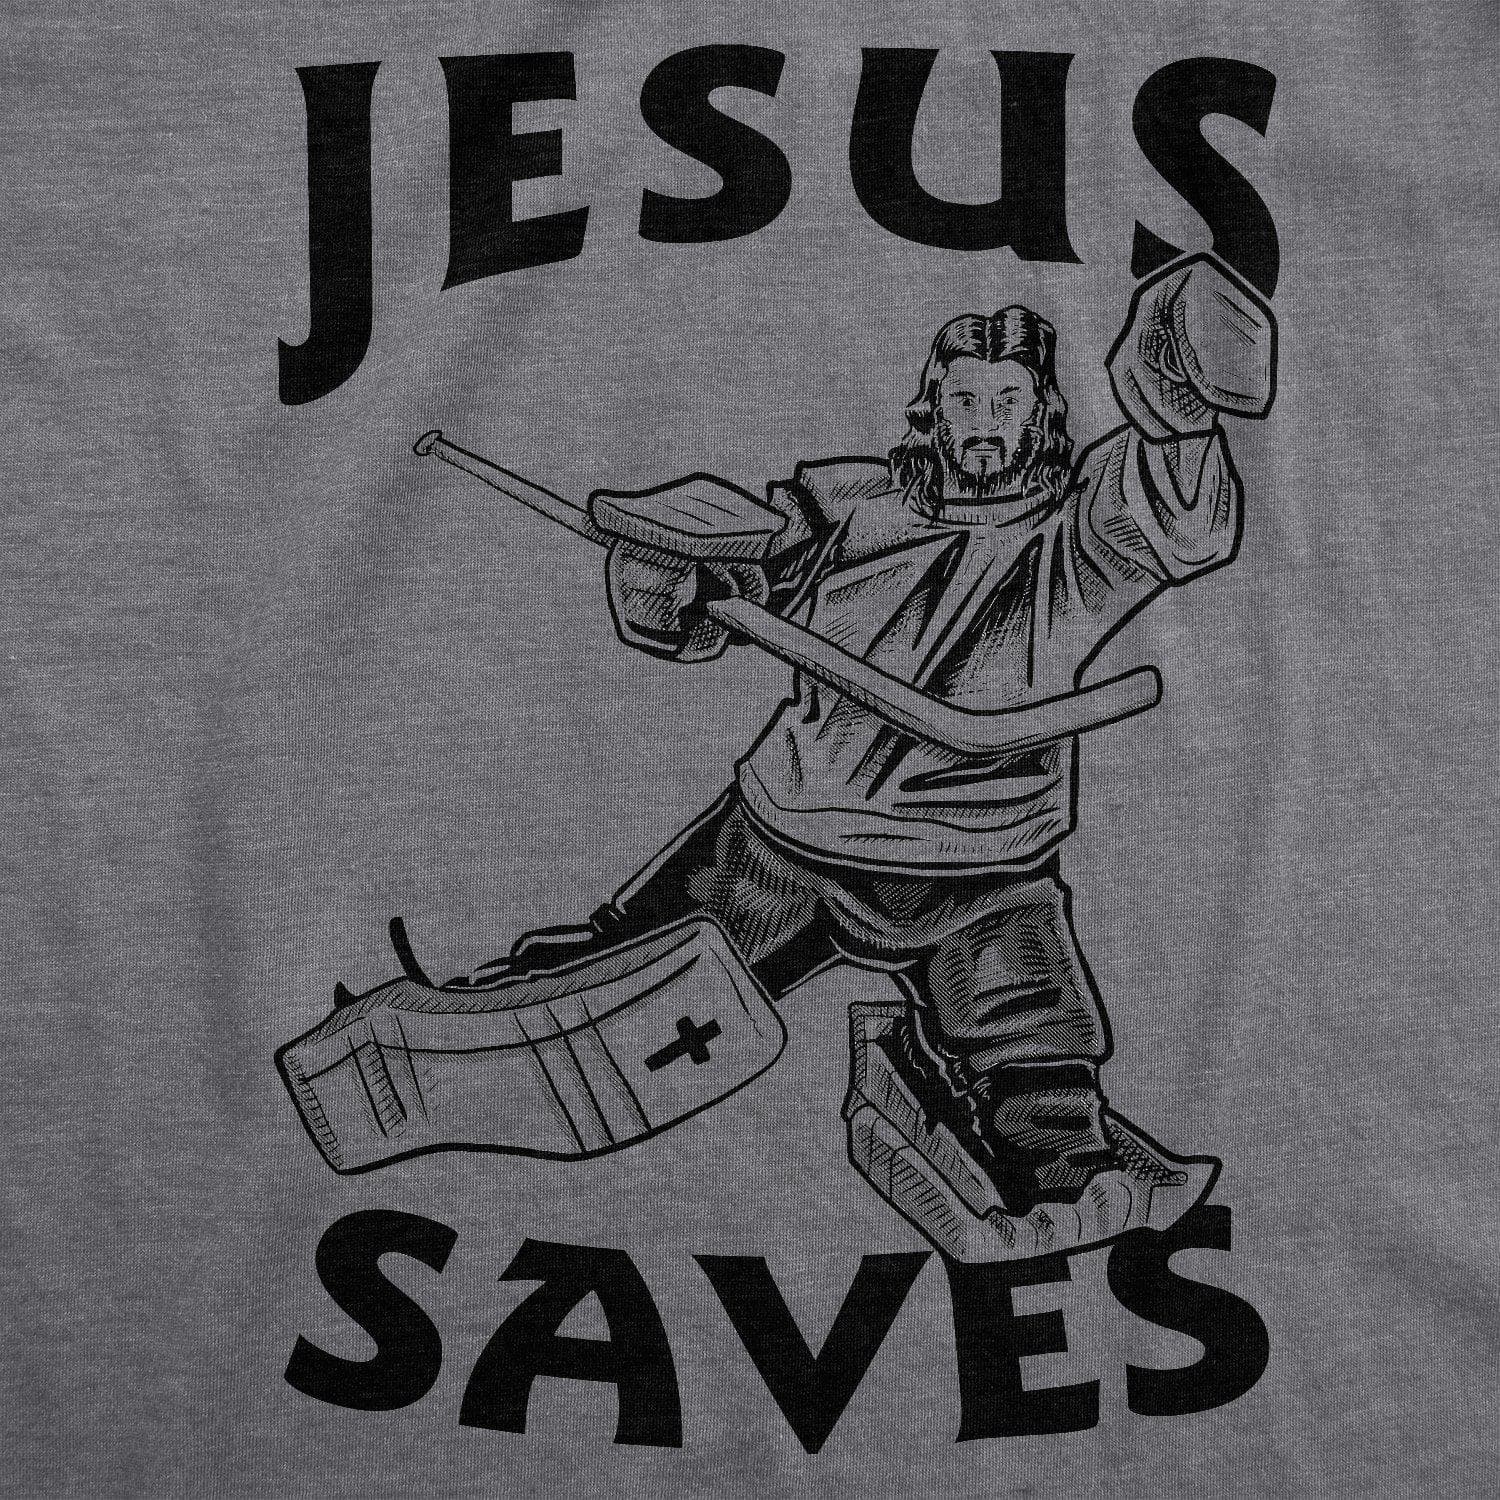 Jesus Saves Hockey Men's Tshirt  -  Crazy Dog T-Shirts